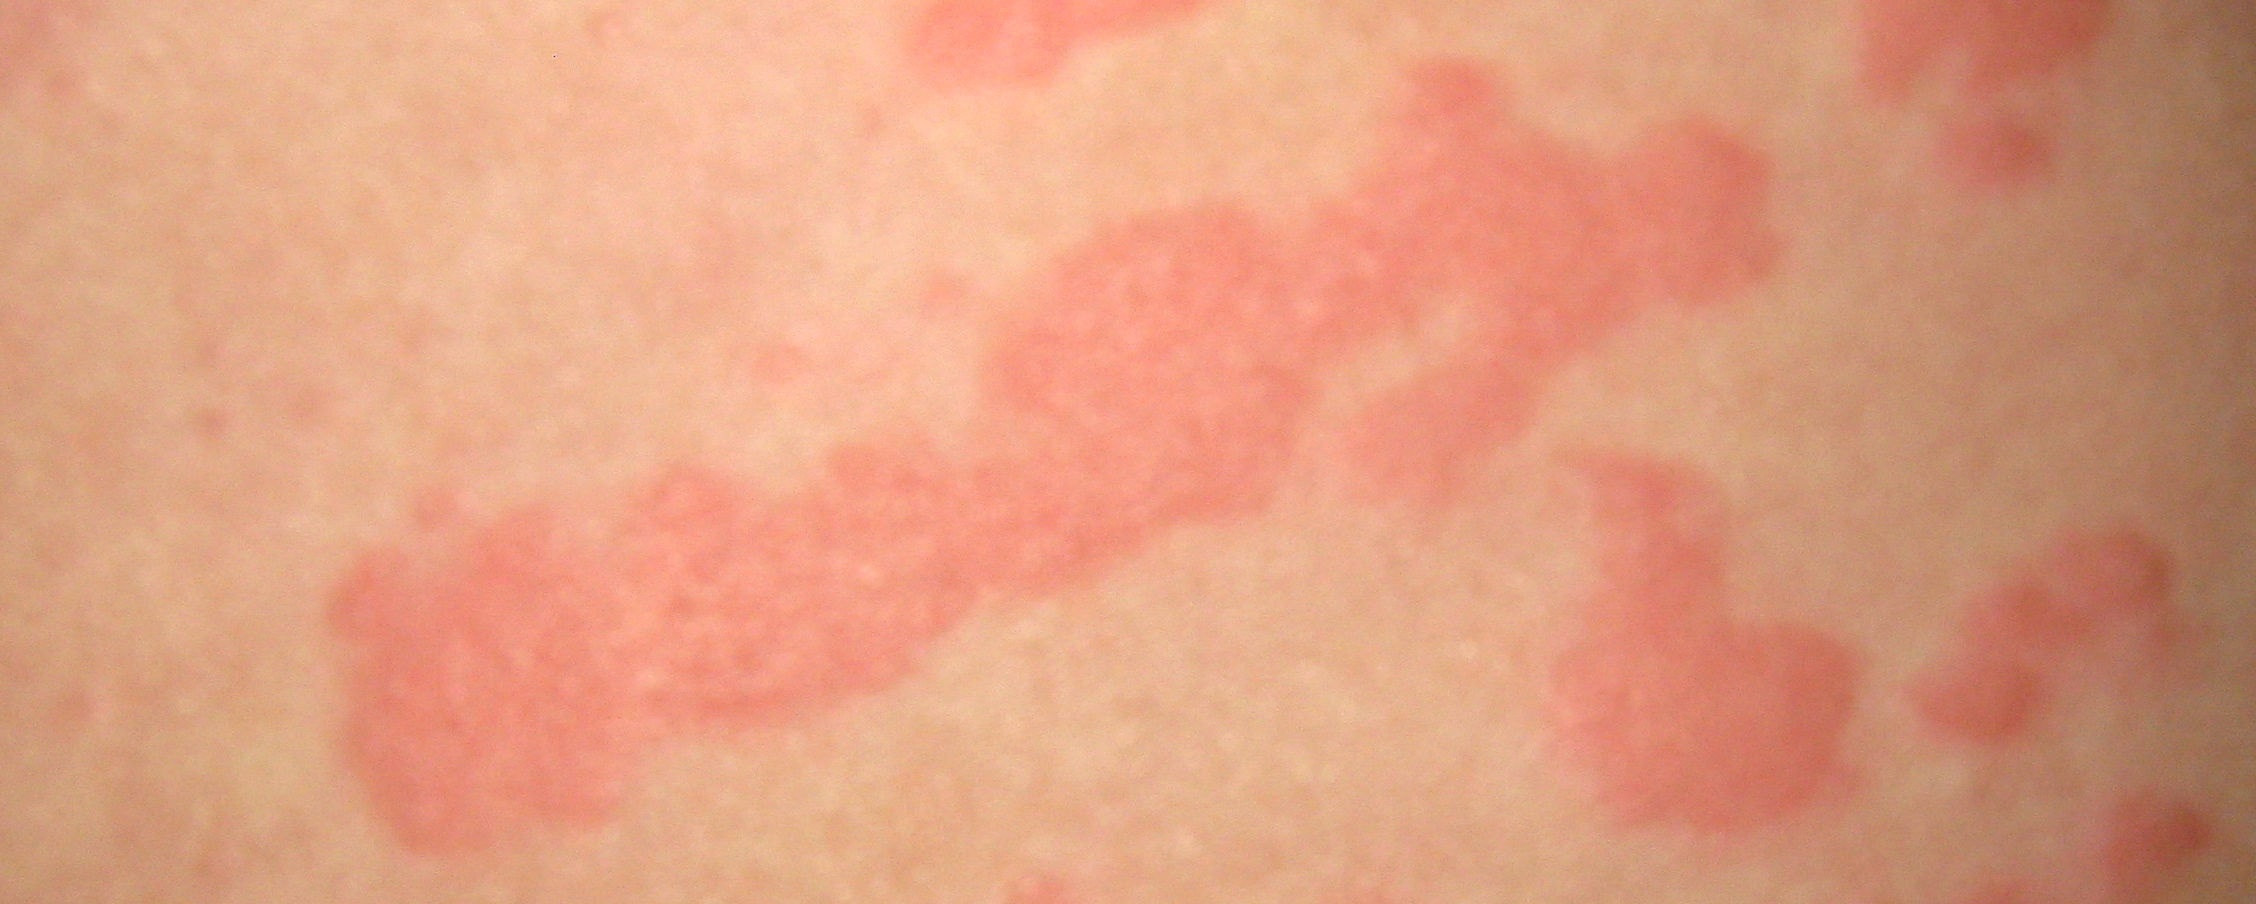 Крапивница может стать - проявлением аллергии кожи лица на холод